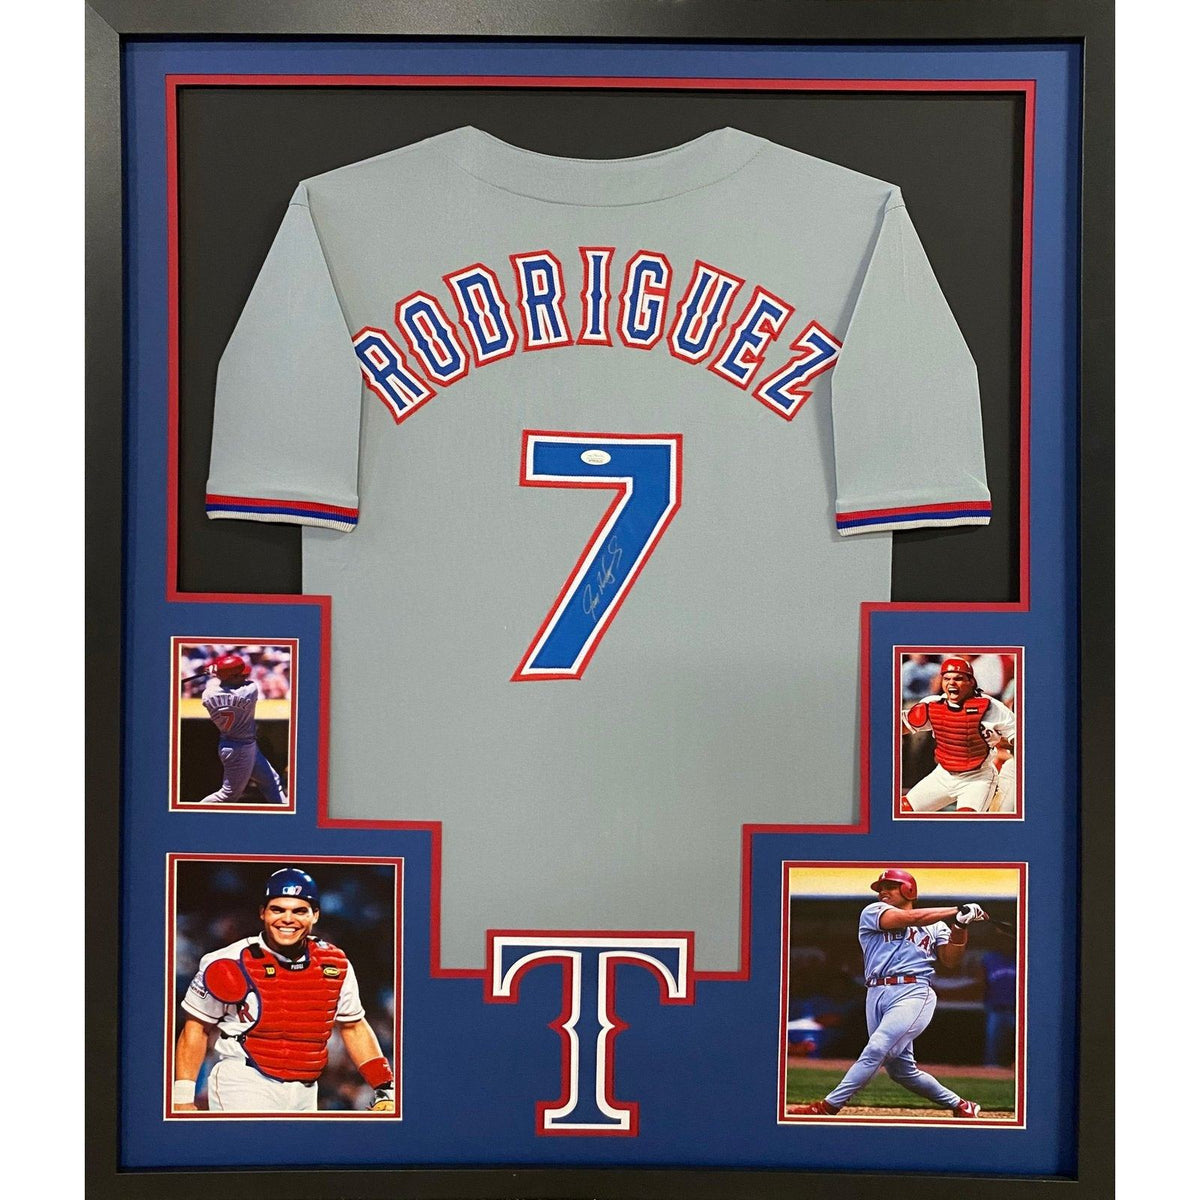 Ivan Rodriguez Texas Rangers Autographed & Inscribed Majestic #7 Replica  Jersey